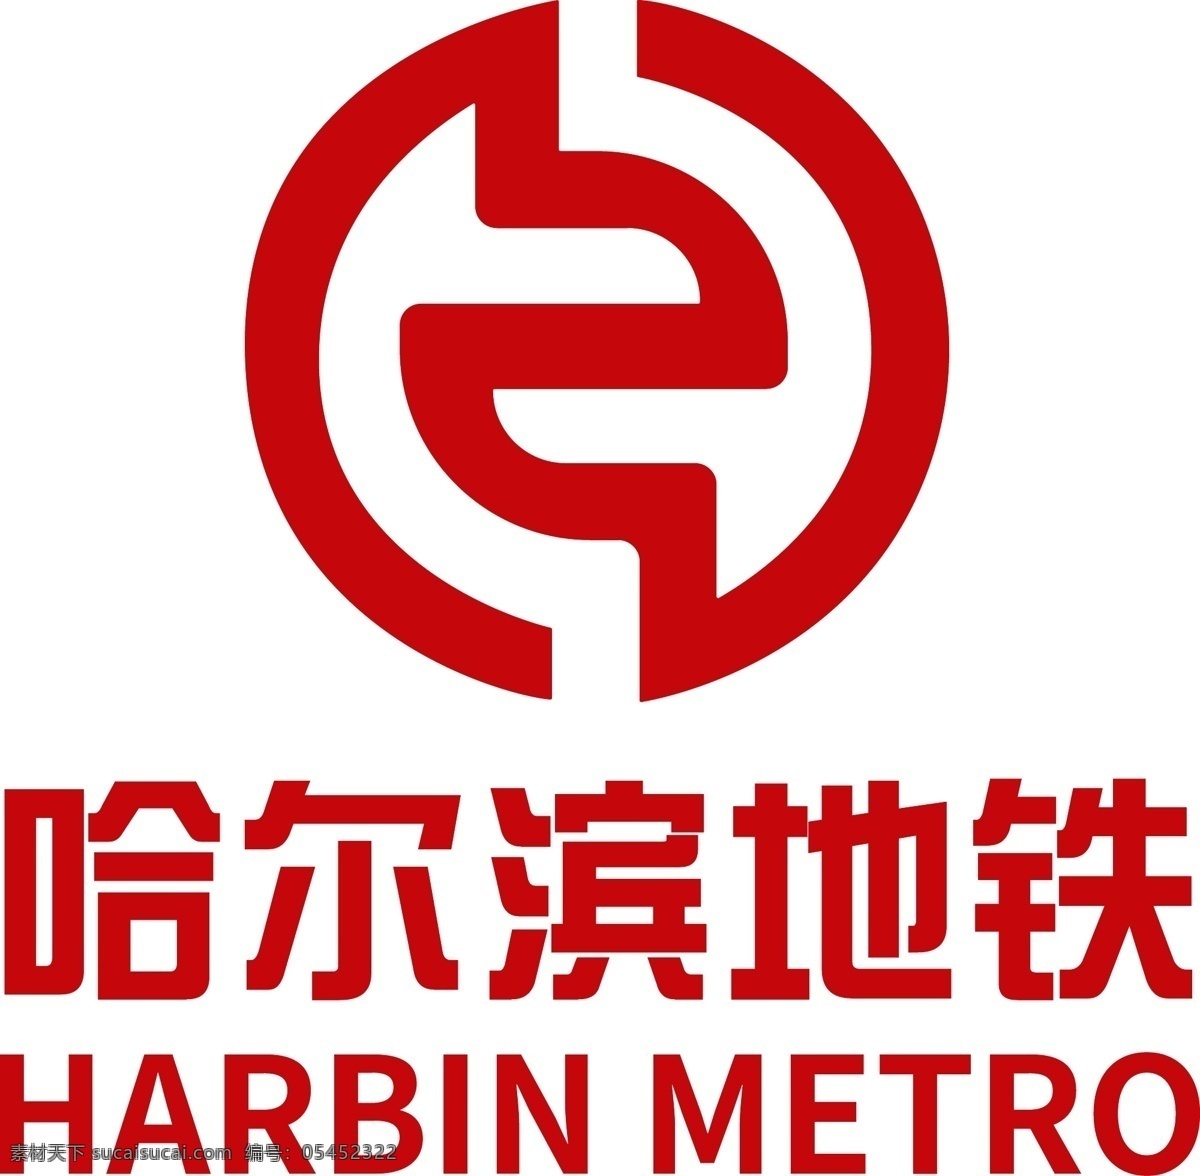 哈尔滨 地铁 logo 地铁logo 哈尔滨地铁 蓝色 最新 标志 企业标识 标签 logo设计 矢量图 可编辑 源文件